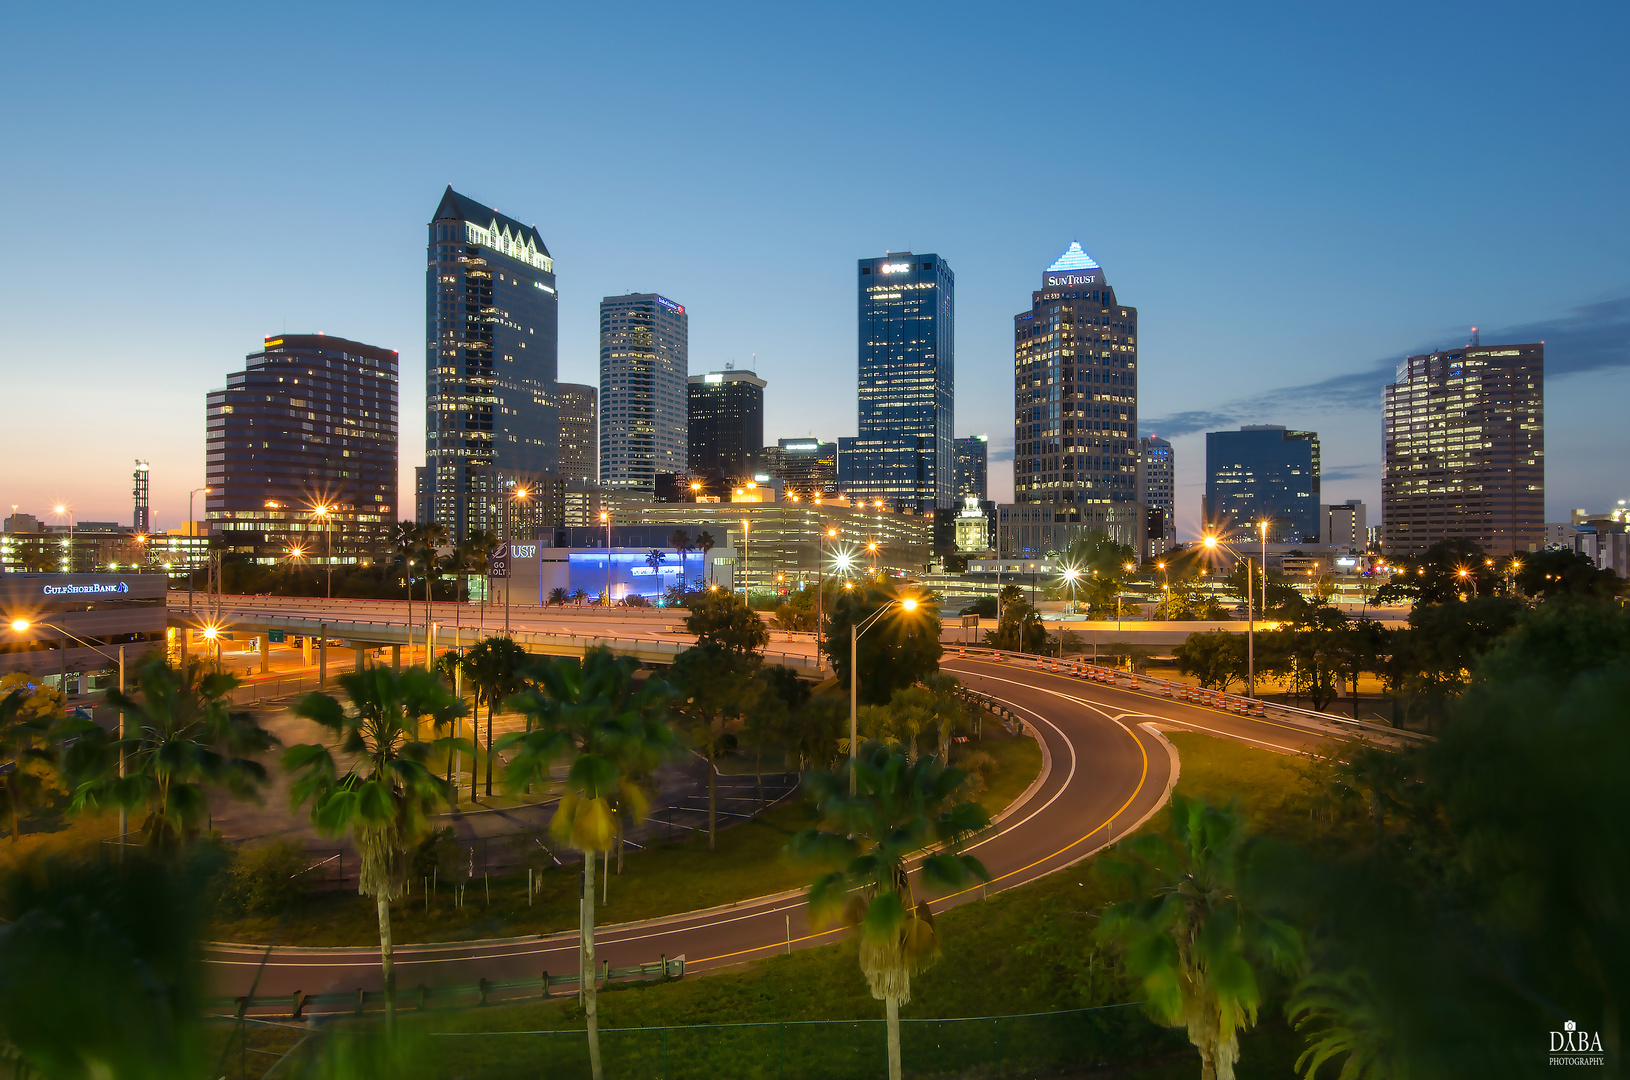 Skyline of Tampa